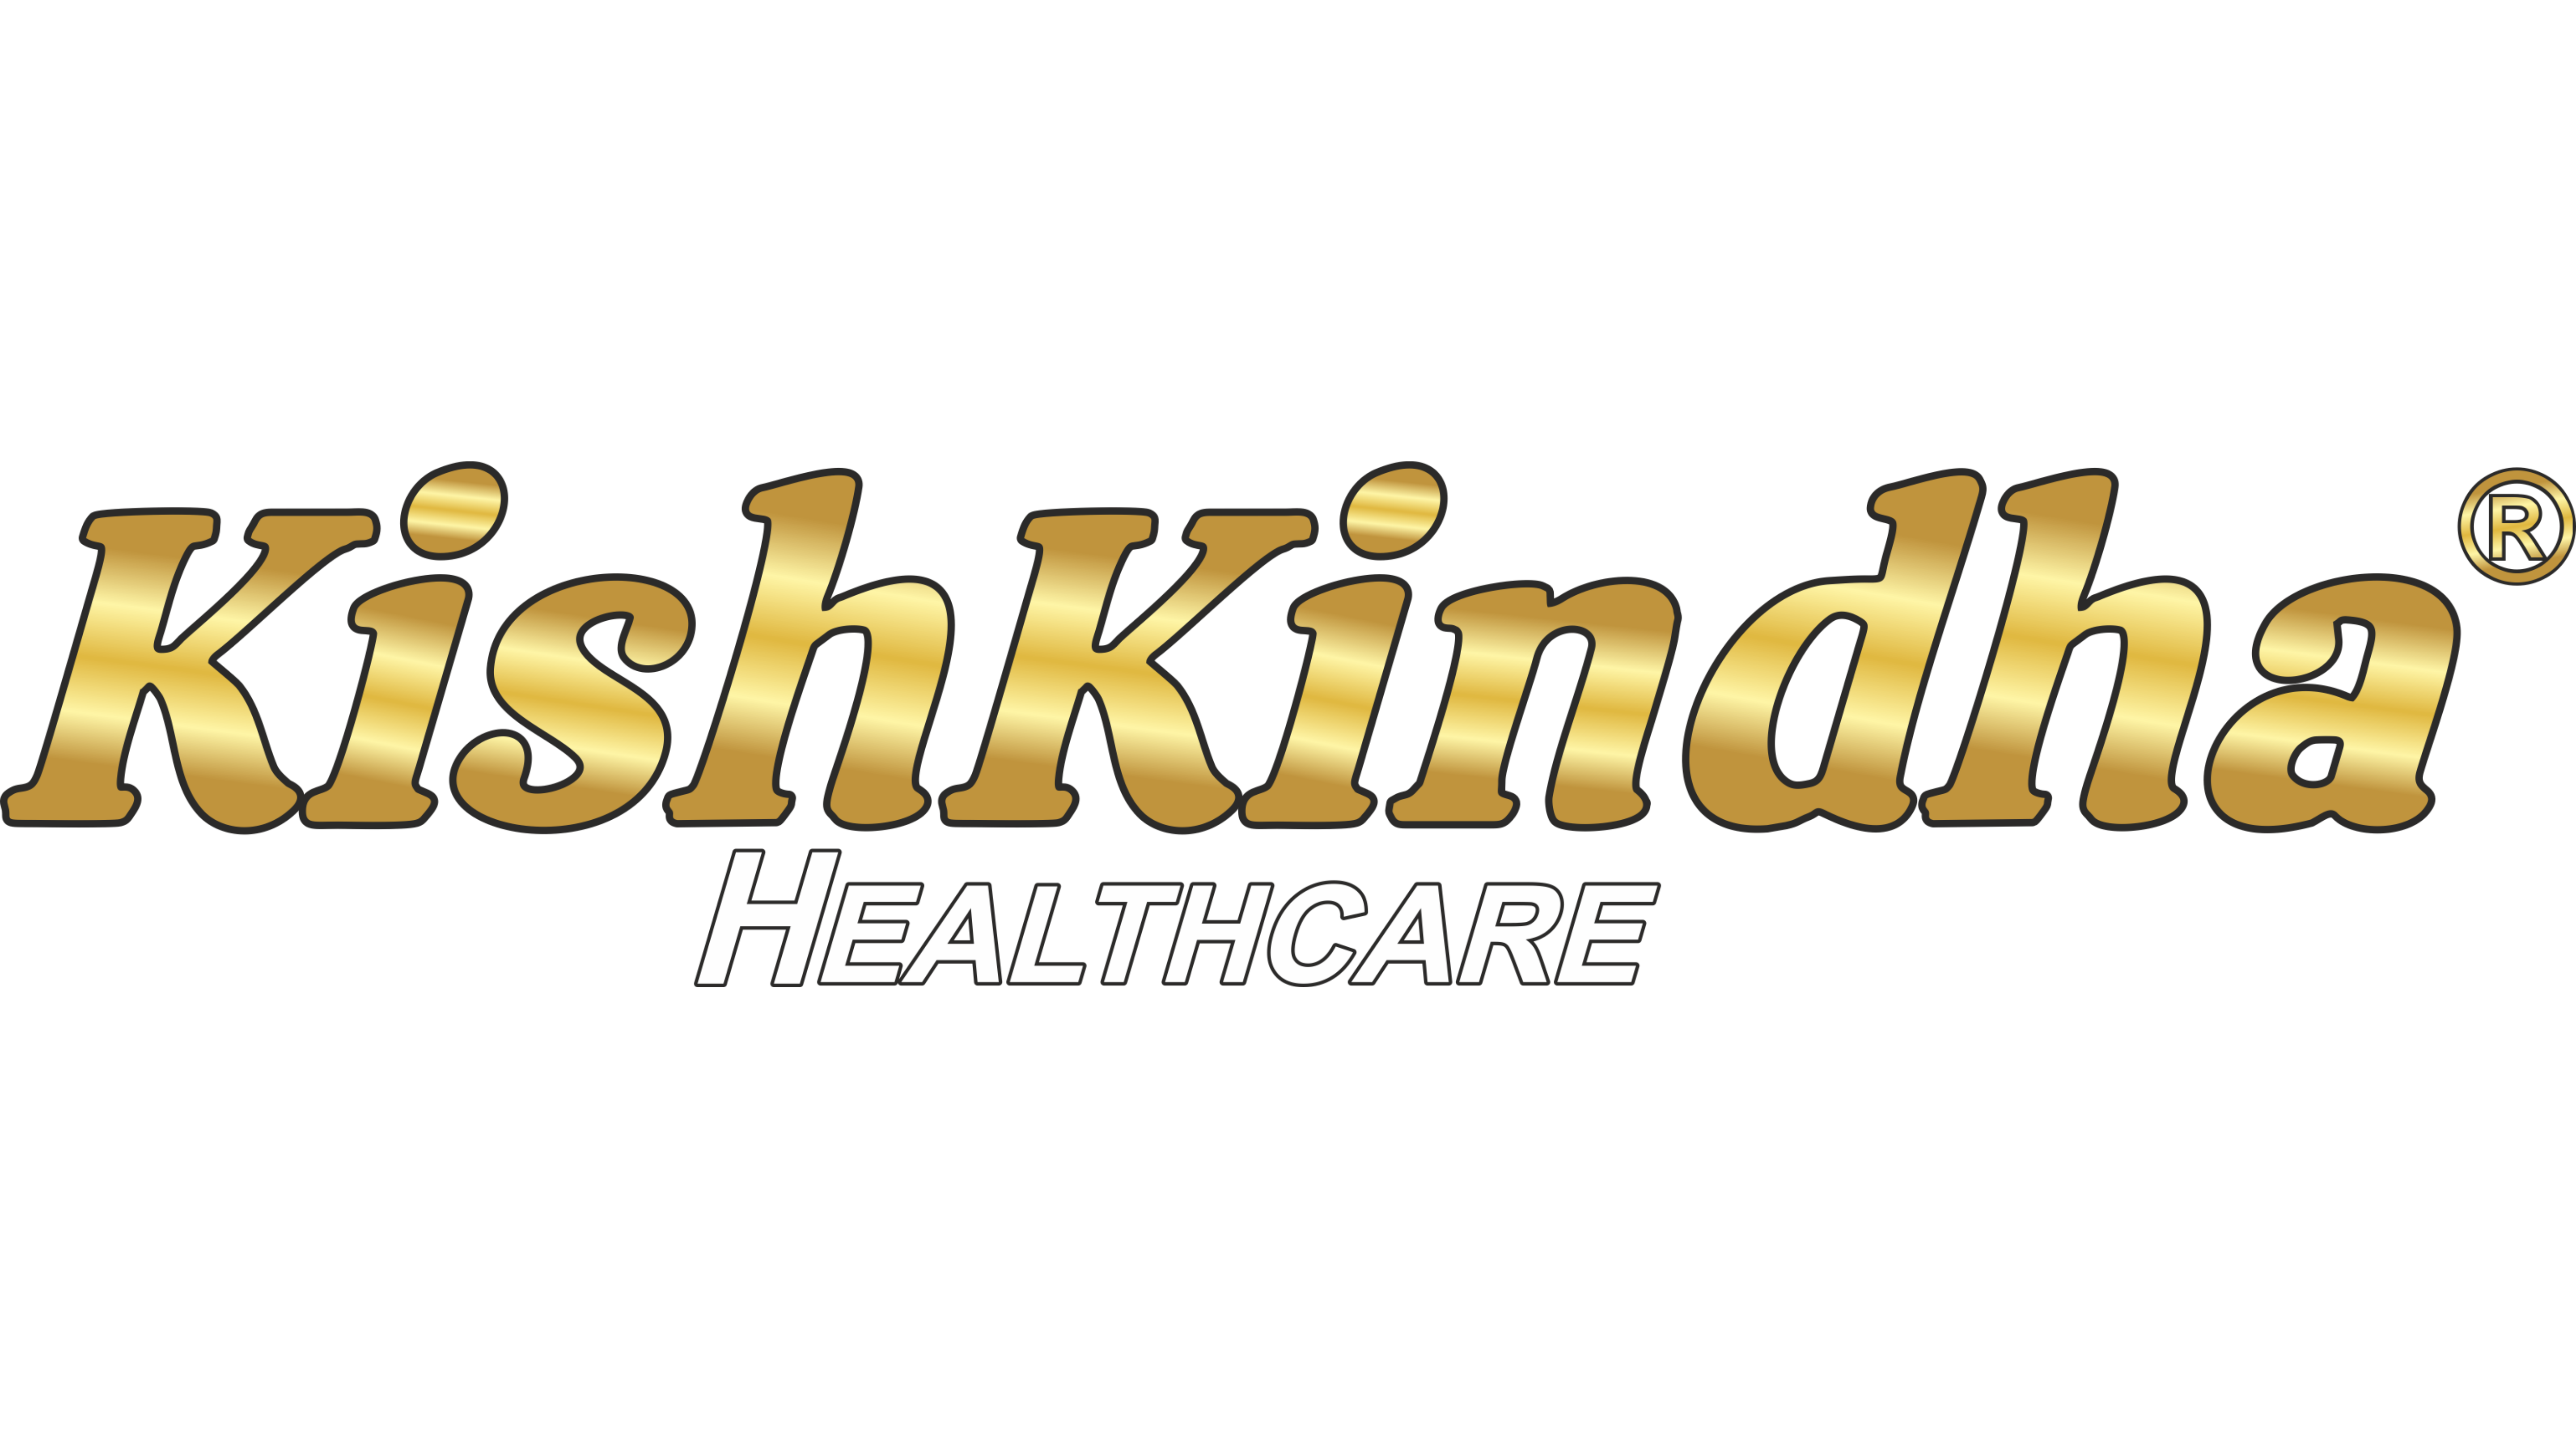 Kishkindhahealthcare.com